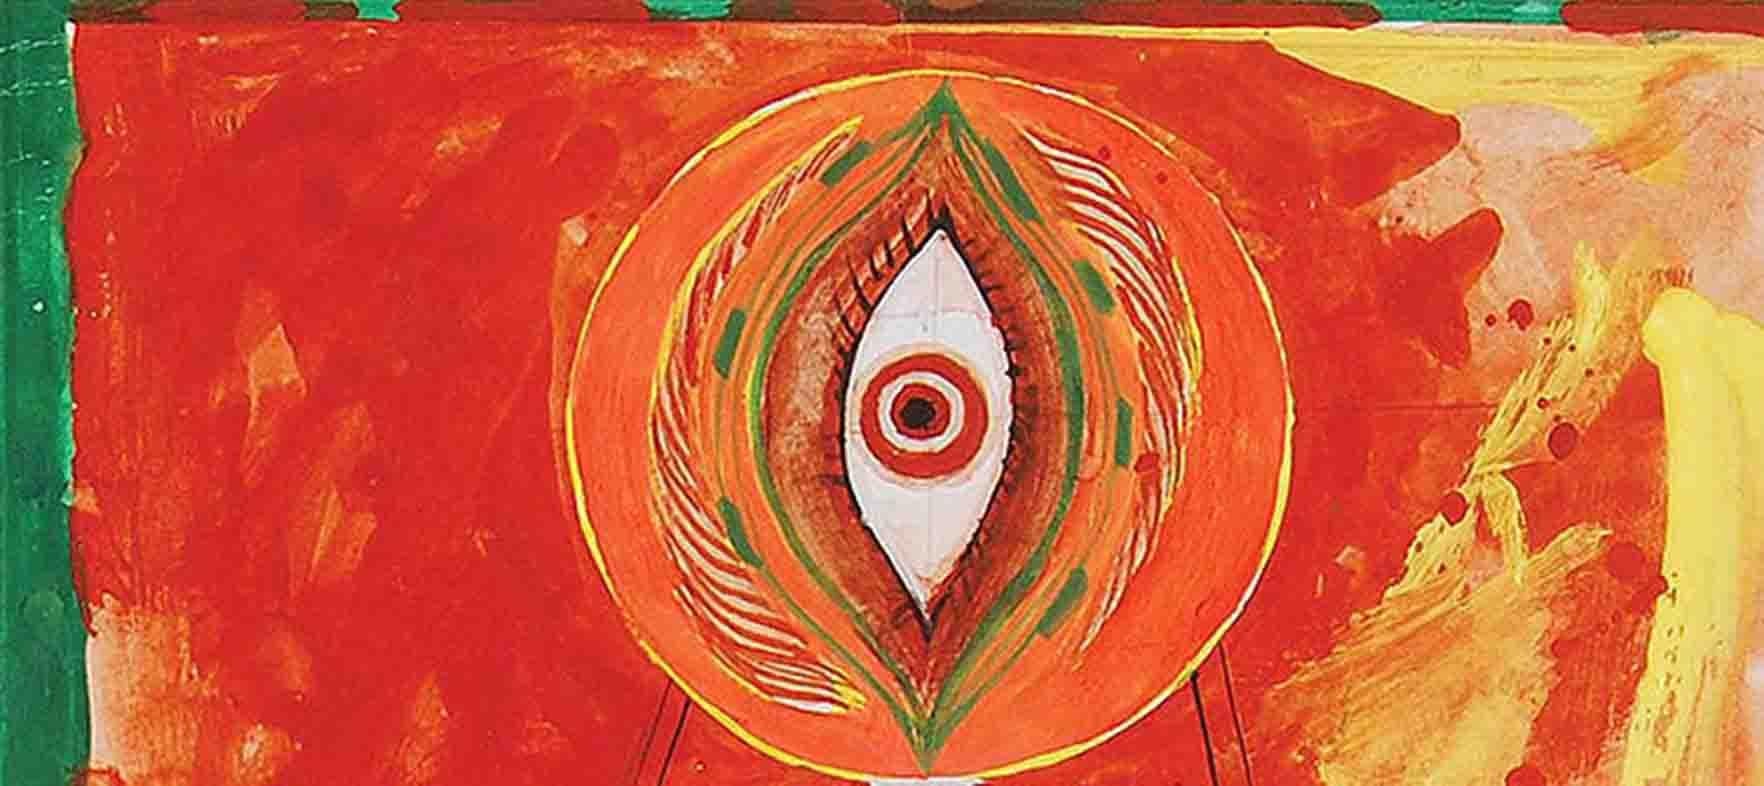 Durga 97, technique mixte sur panneau, rouge, jaune, vert par l'artiste indien « En stock » - Moderne Mixed Media Art par Sunil Das